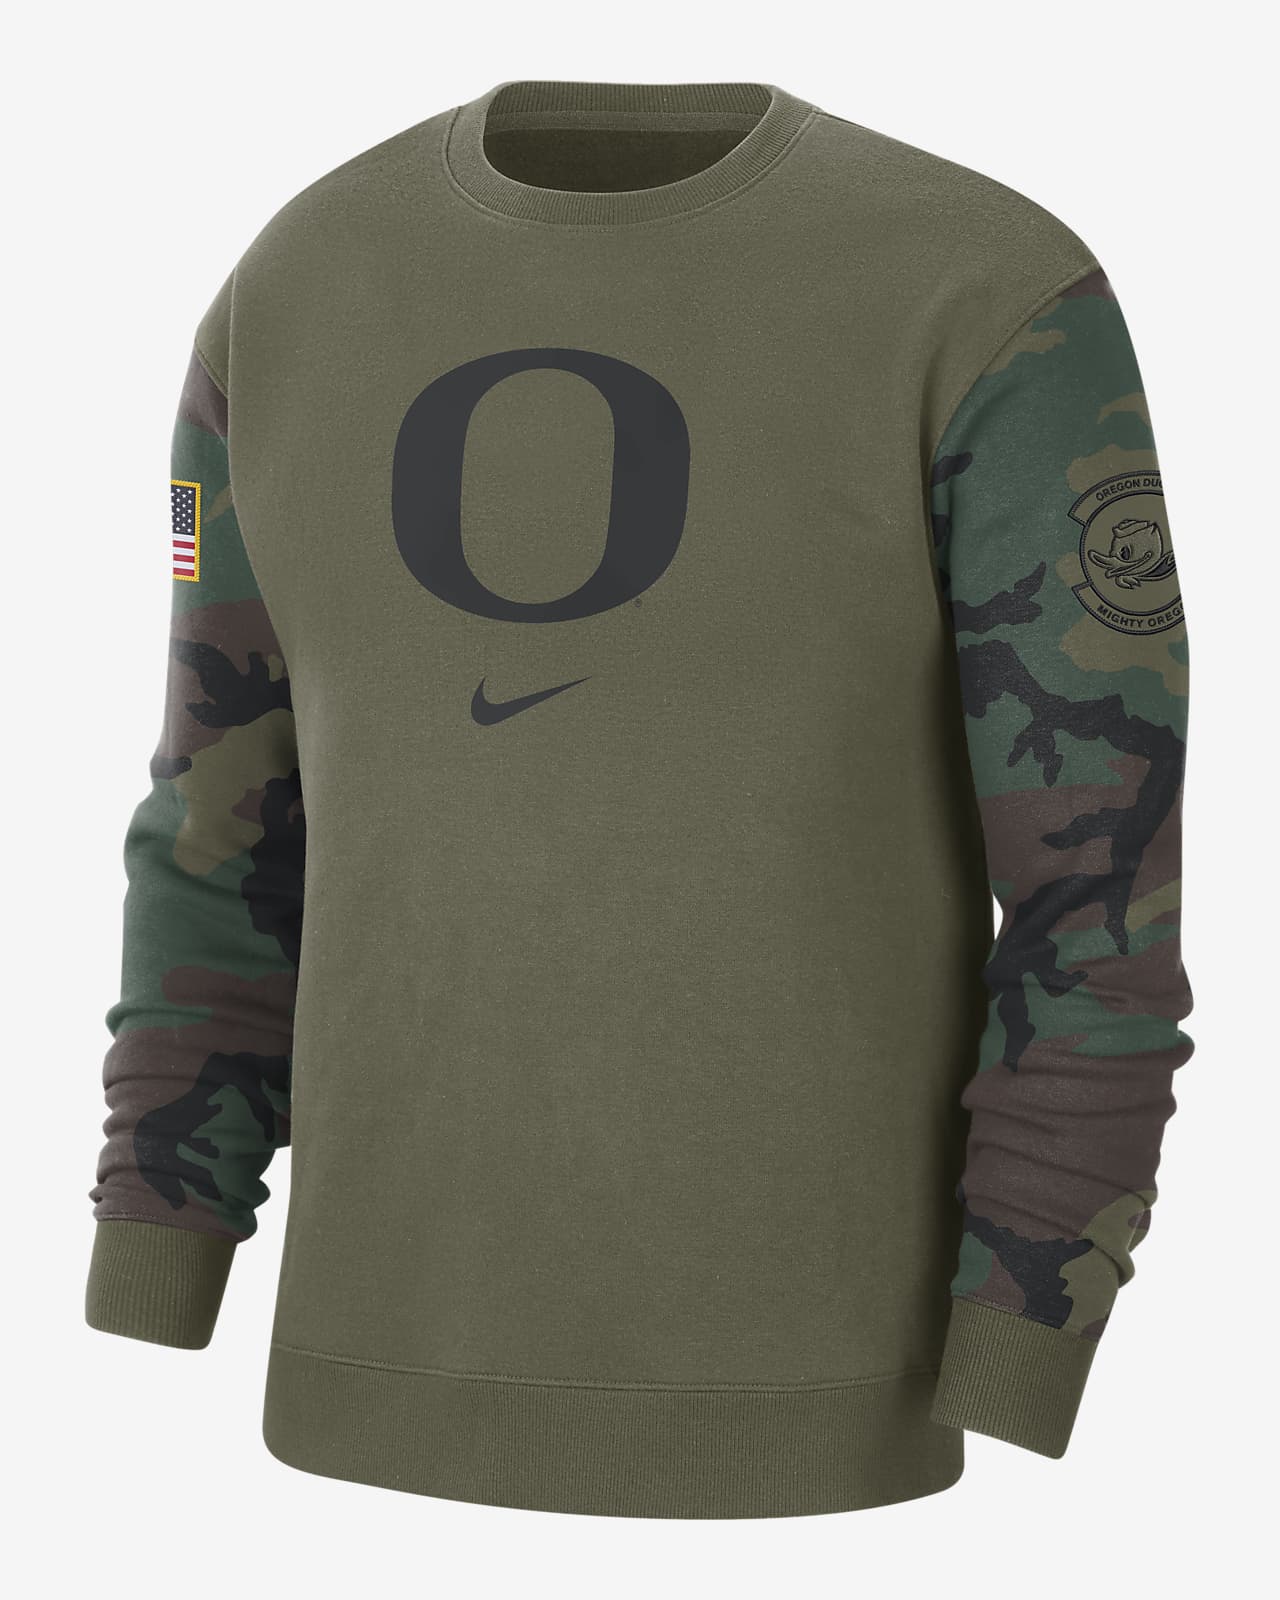 Oregon Club Fleece Men's Nike College Crew-Neck Sweatshirt